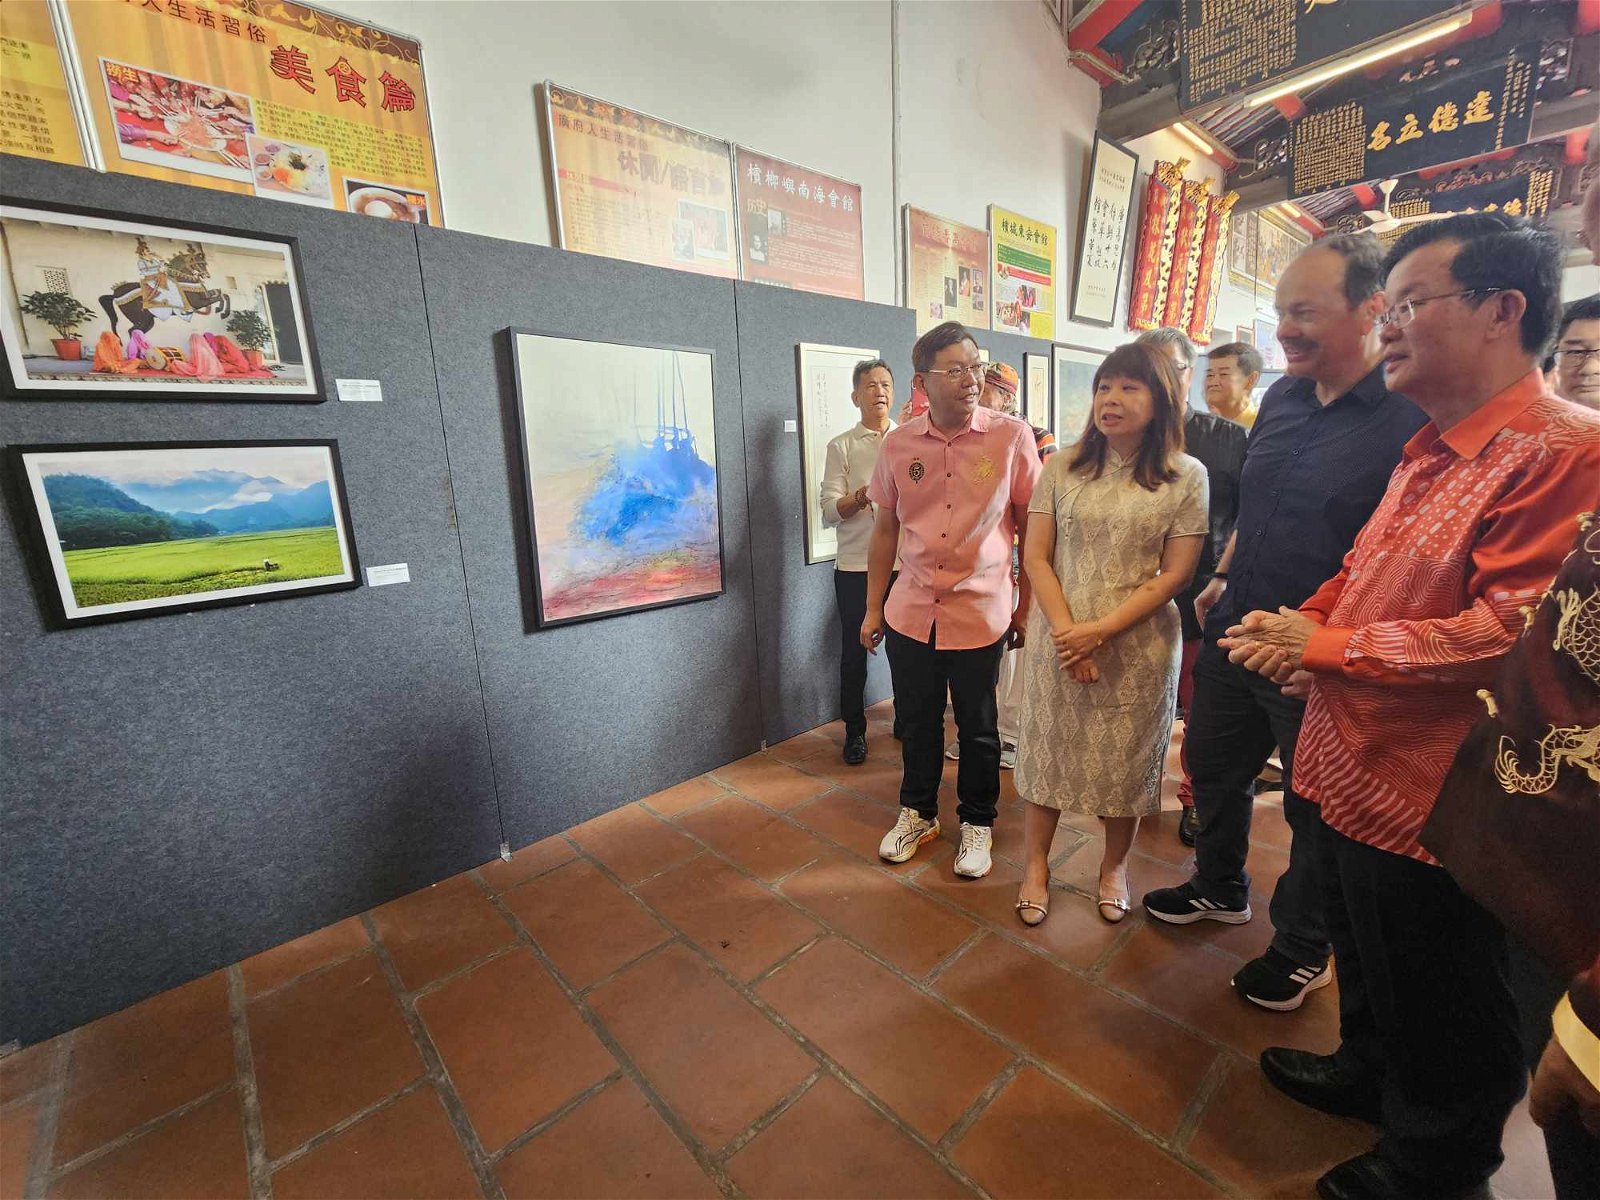 曹观友等人，一同参观艺术展的展示作品。